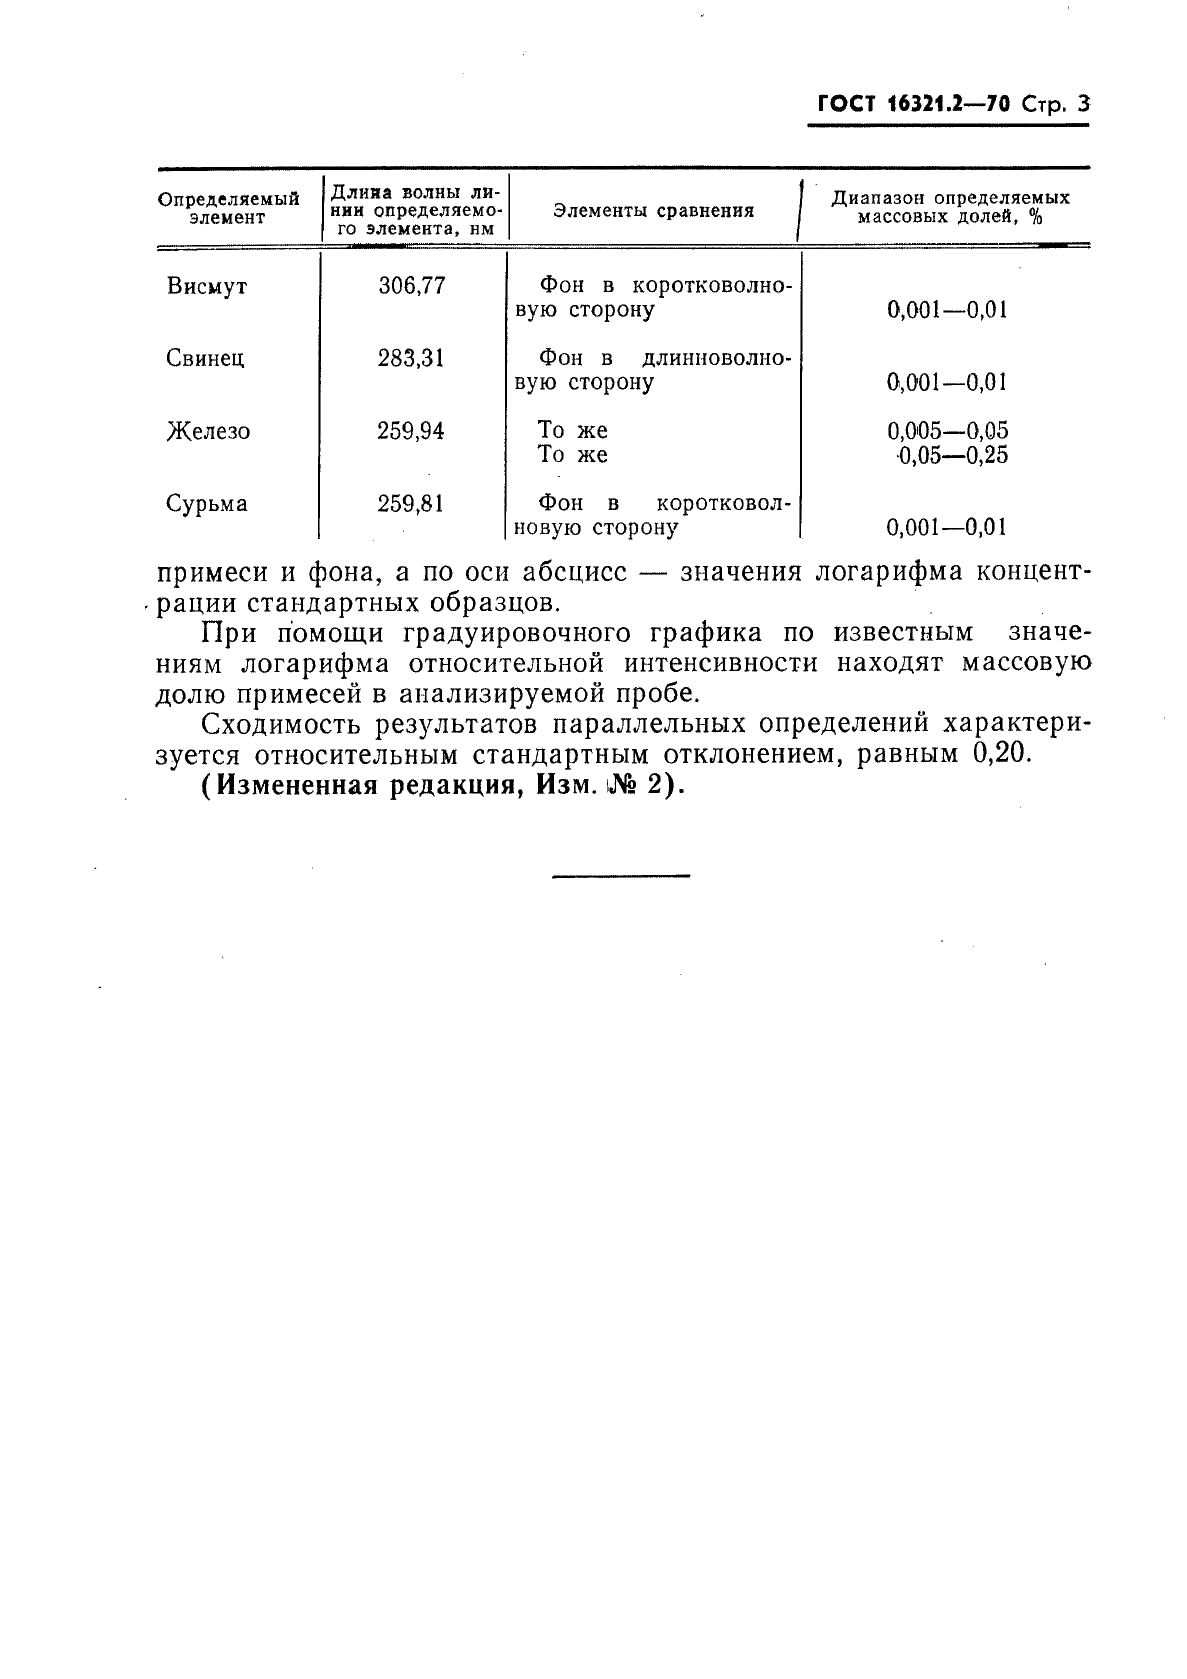 ГОСТ 16321.2-70 Сплавы серебряно-медные. Метод спектрального анализа (фото 3 из 4)